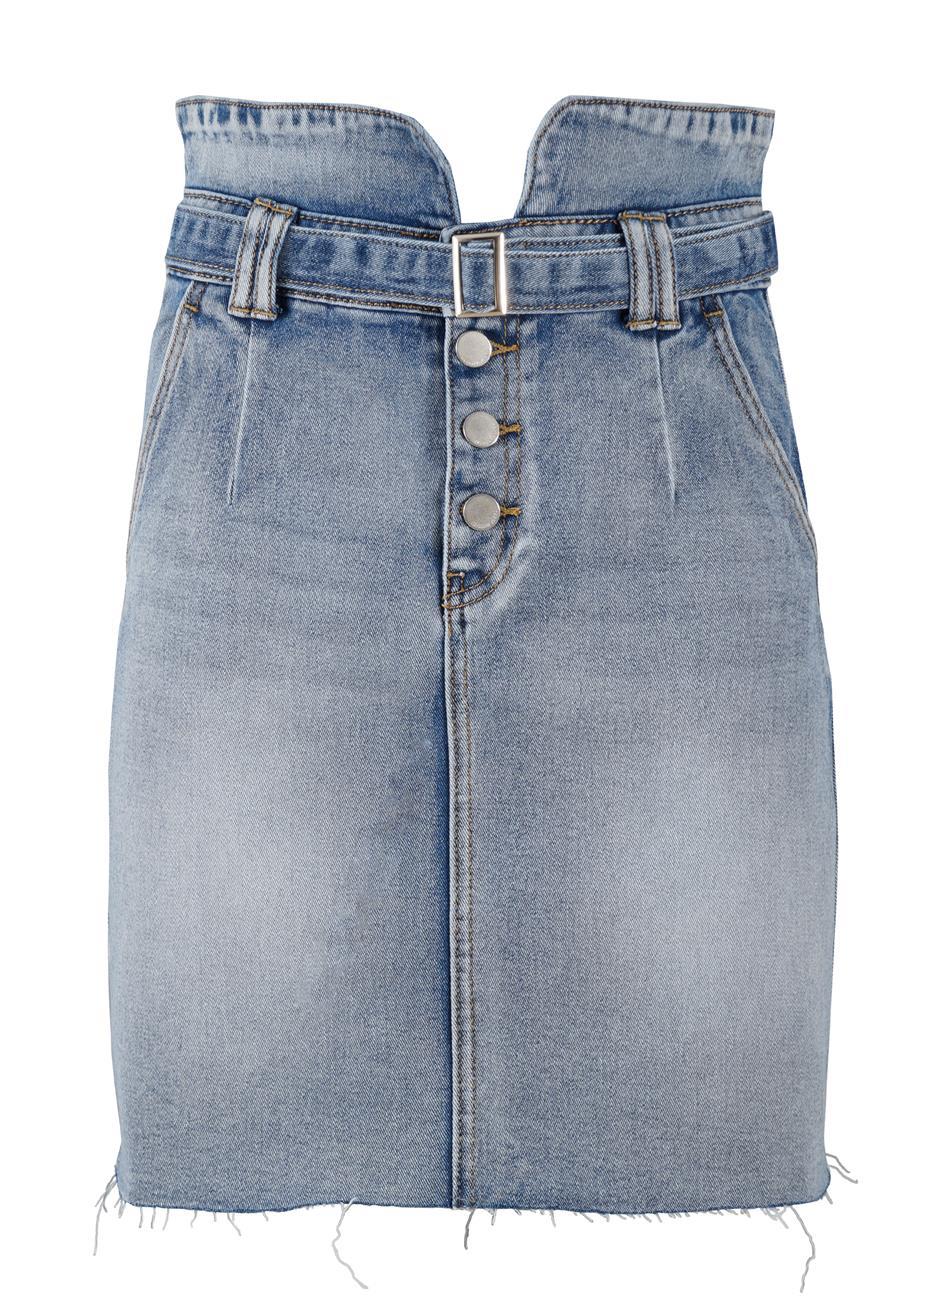 Γυναικείο φούστα jean hight waist. Denim collection